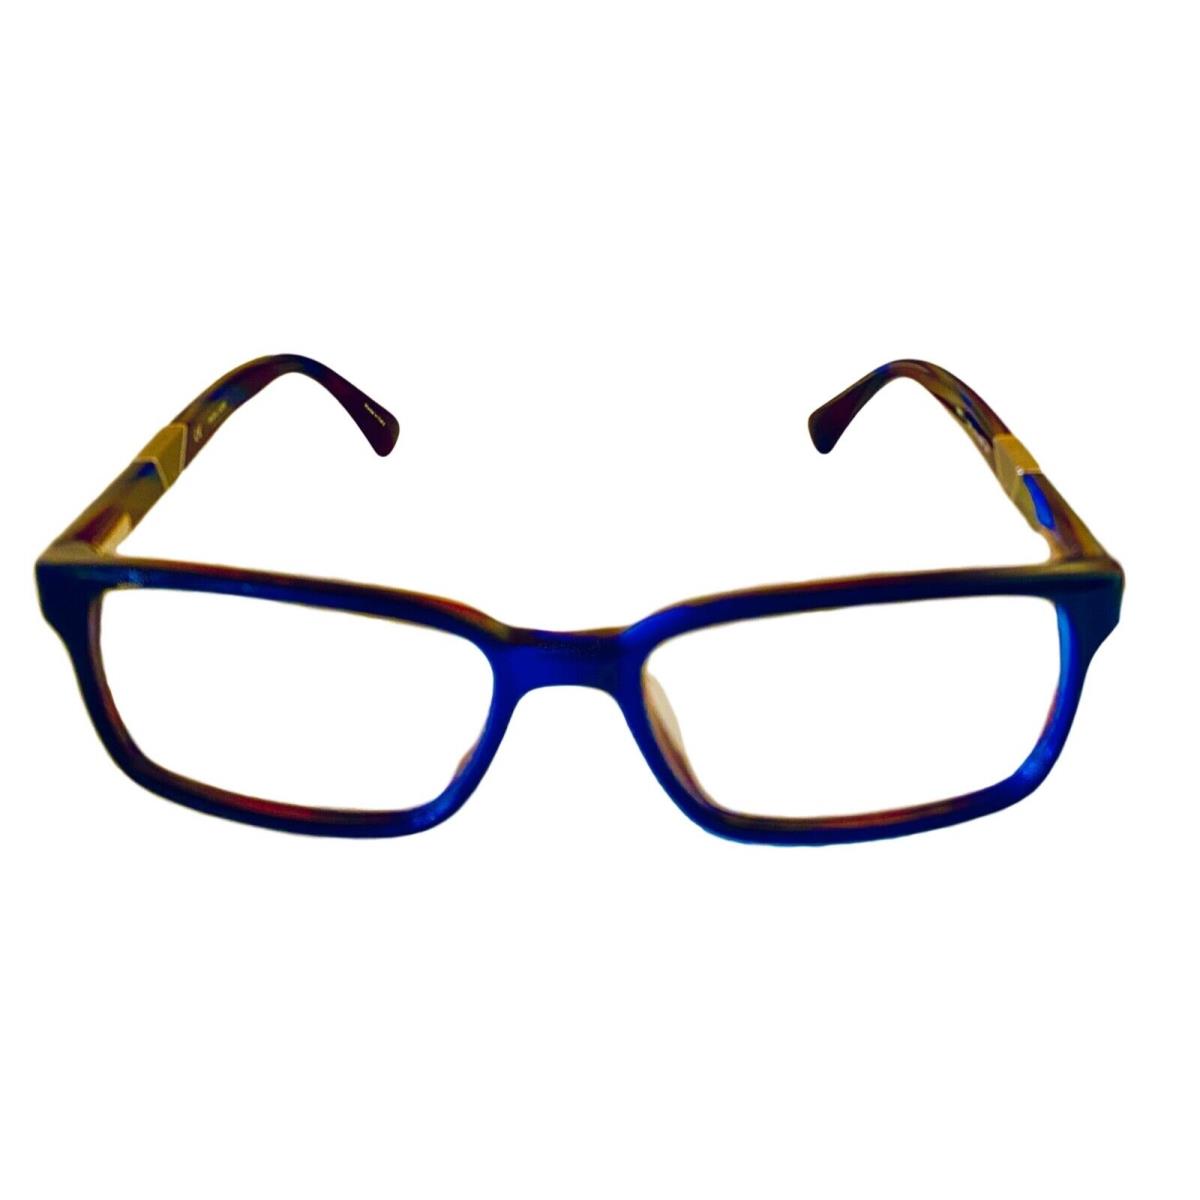 Police eyeglasses  - Blue Brown , Blue Brown Frame, Clear dummy Lens 0